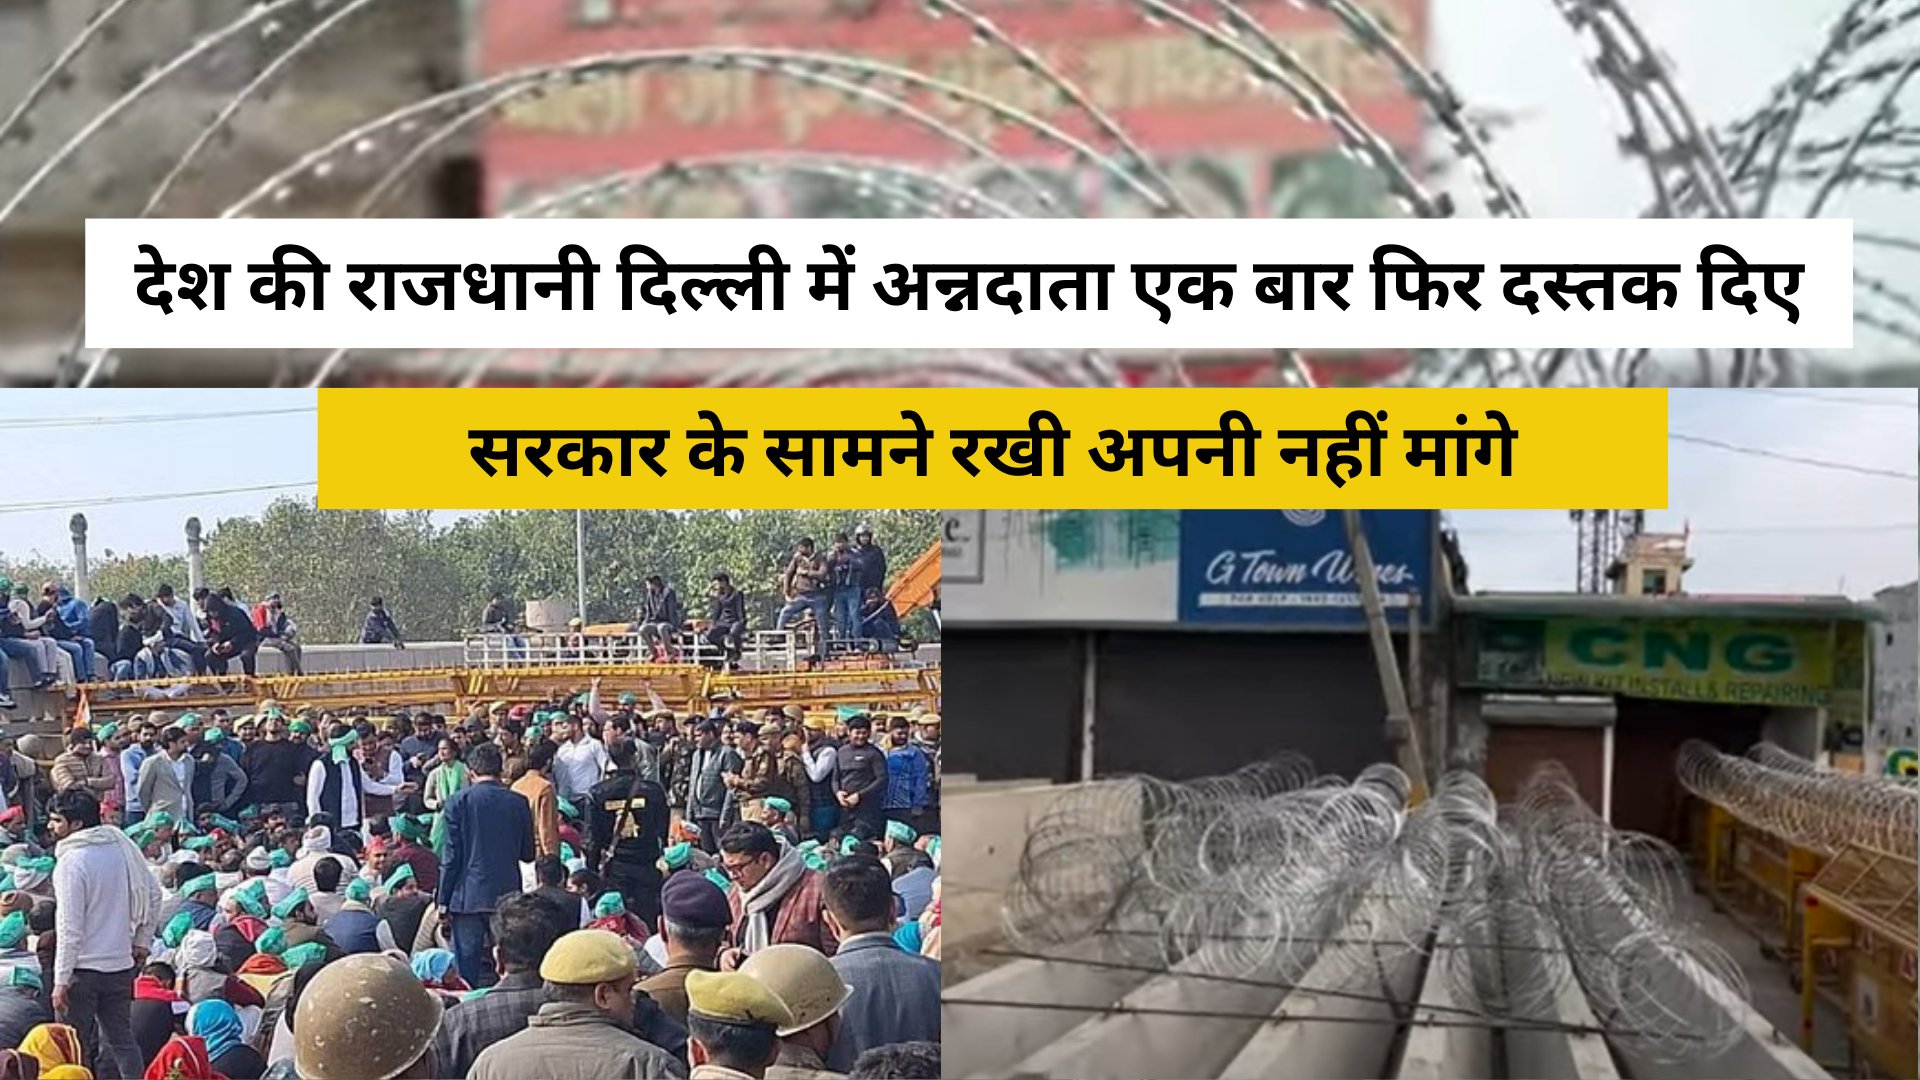 Kisan Aandolan: देश की राजधानी दिल्ली में अन्नदाता किसानों की  एक बार फिर दस्तक दिए, सरकार के सामने रखी अपनी नहीं मांगे